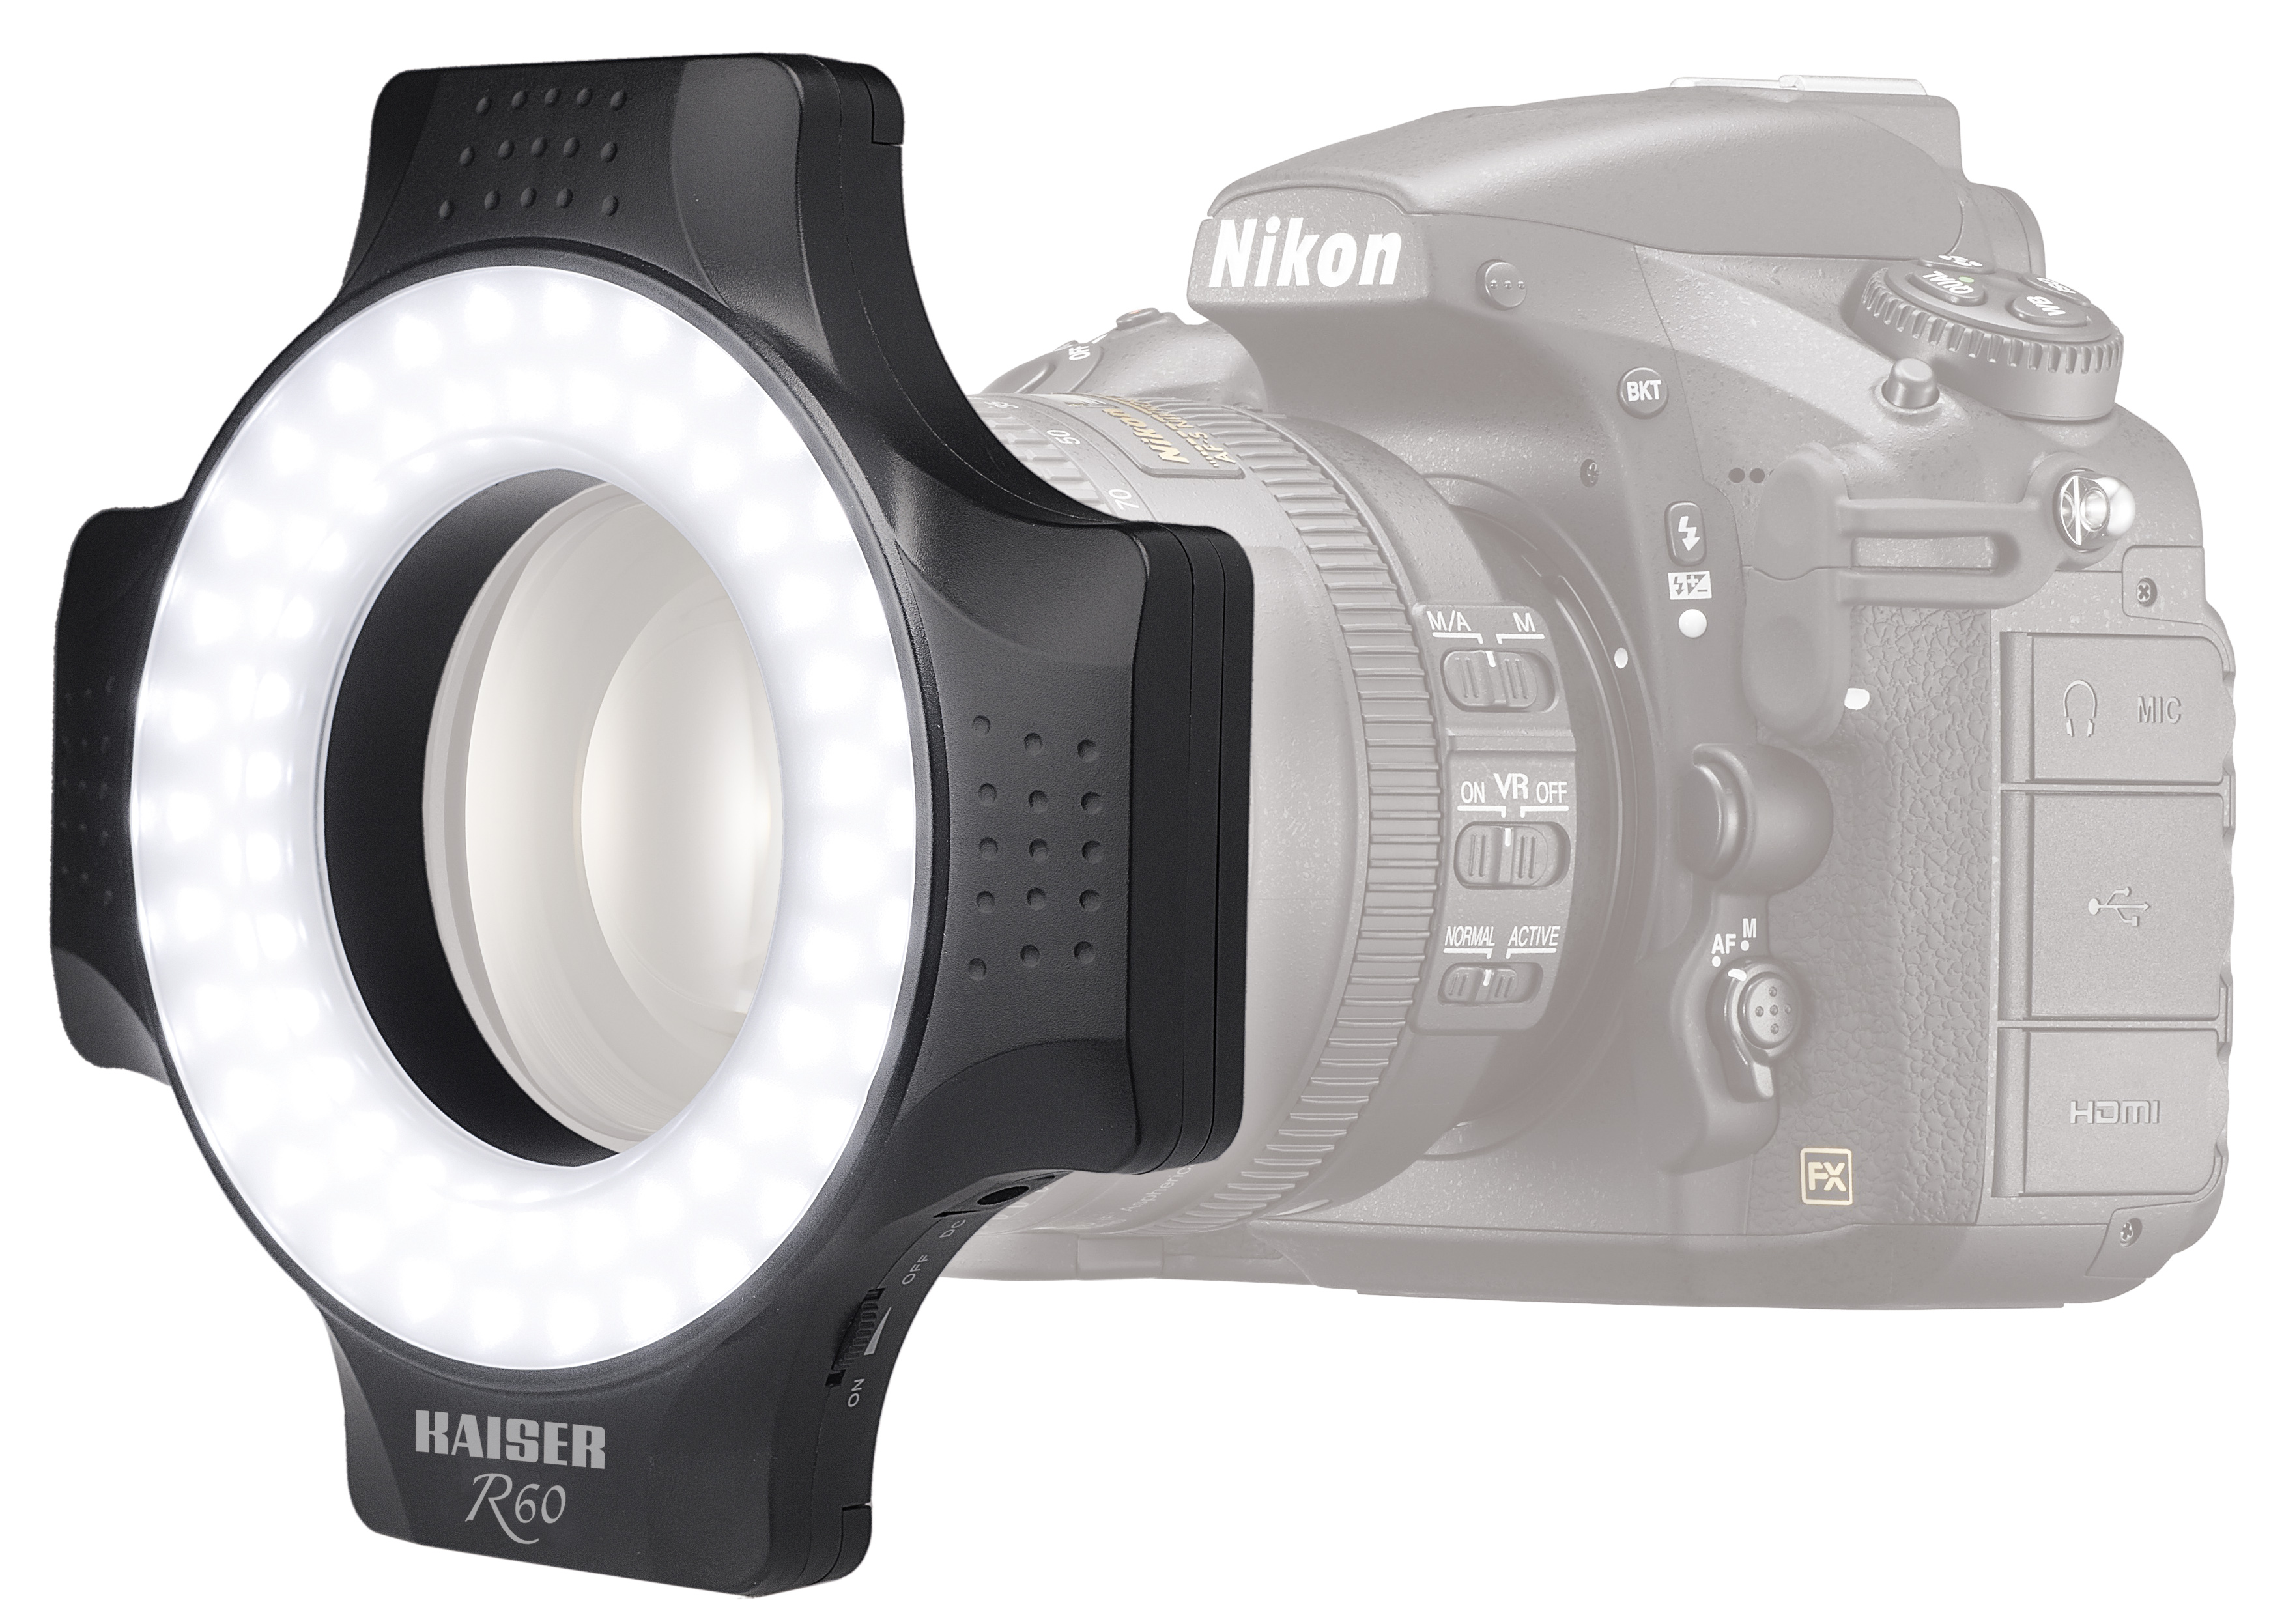 KAISER LED-Ringleuchte R60 (Abgebildete Kamera nicht im Lieferumfang enthalten)